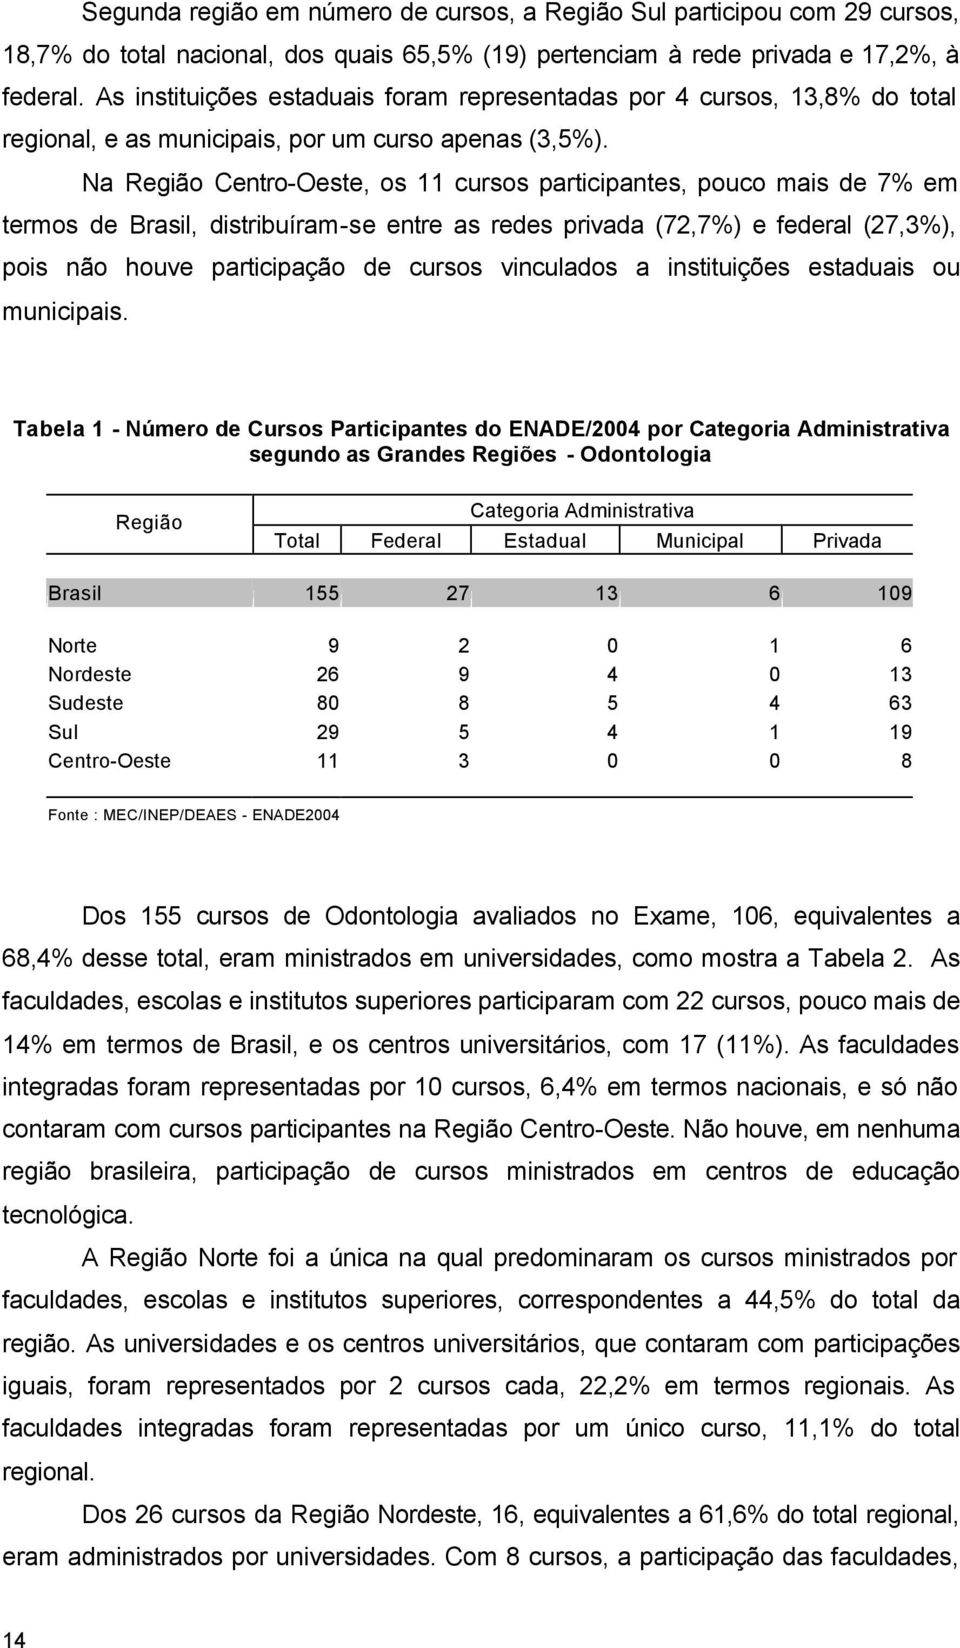 Na Região Centro-Oeste, os 11 cursos participantes, pouco mais de 7% em termos de Brasil, distribuíram-se entre as redes privada (72,7%) e federal (27,3%), pois não houve participação de cursos